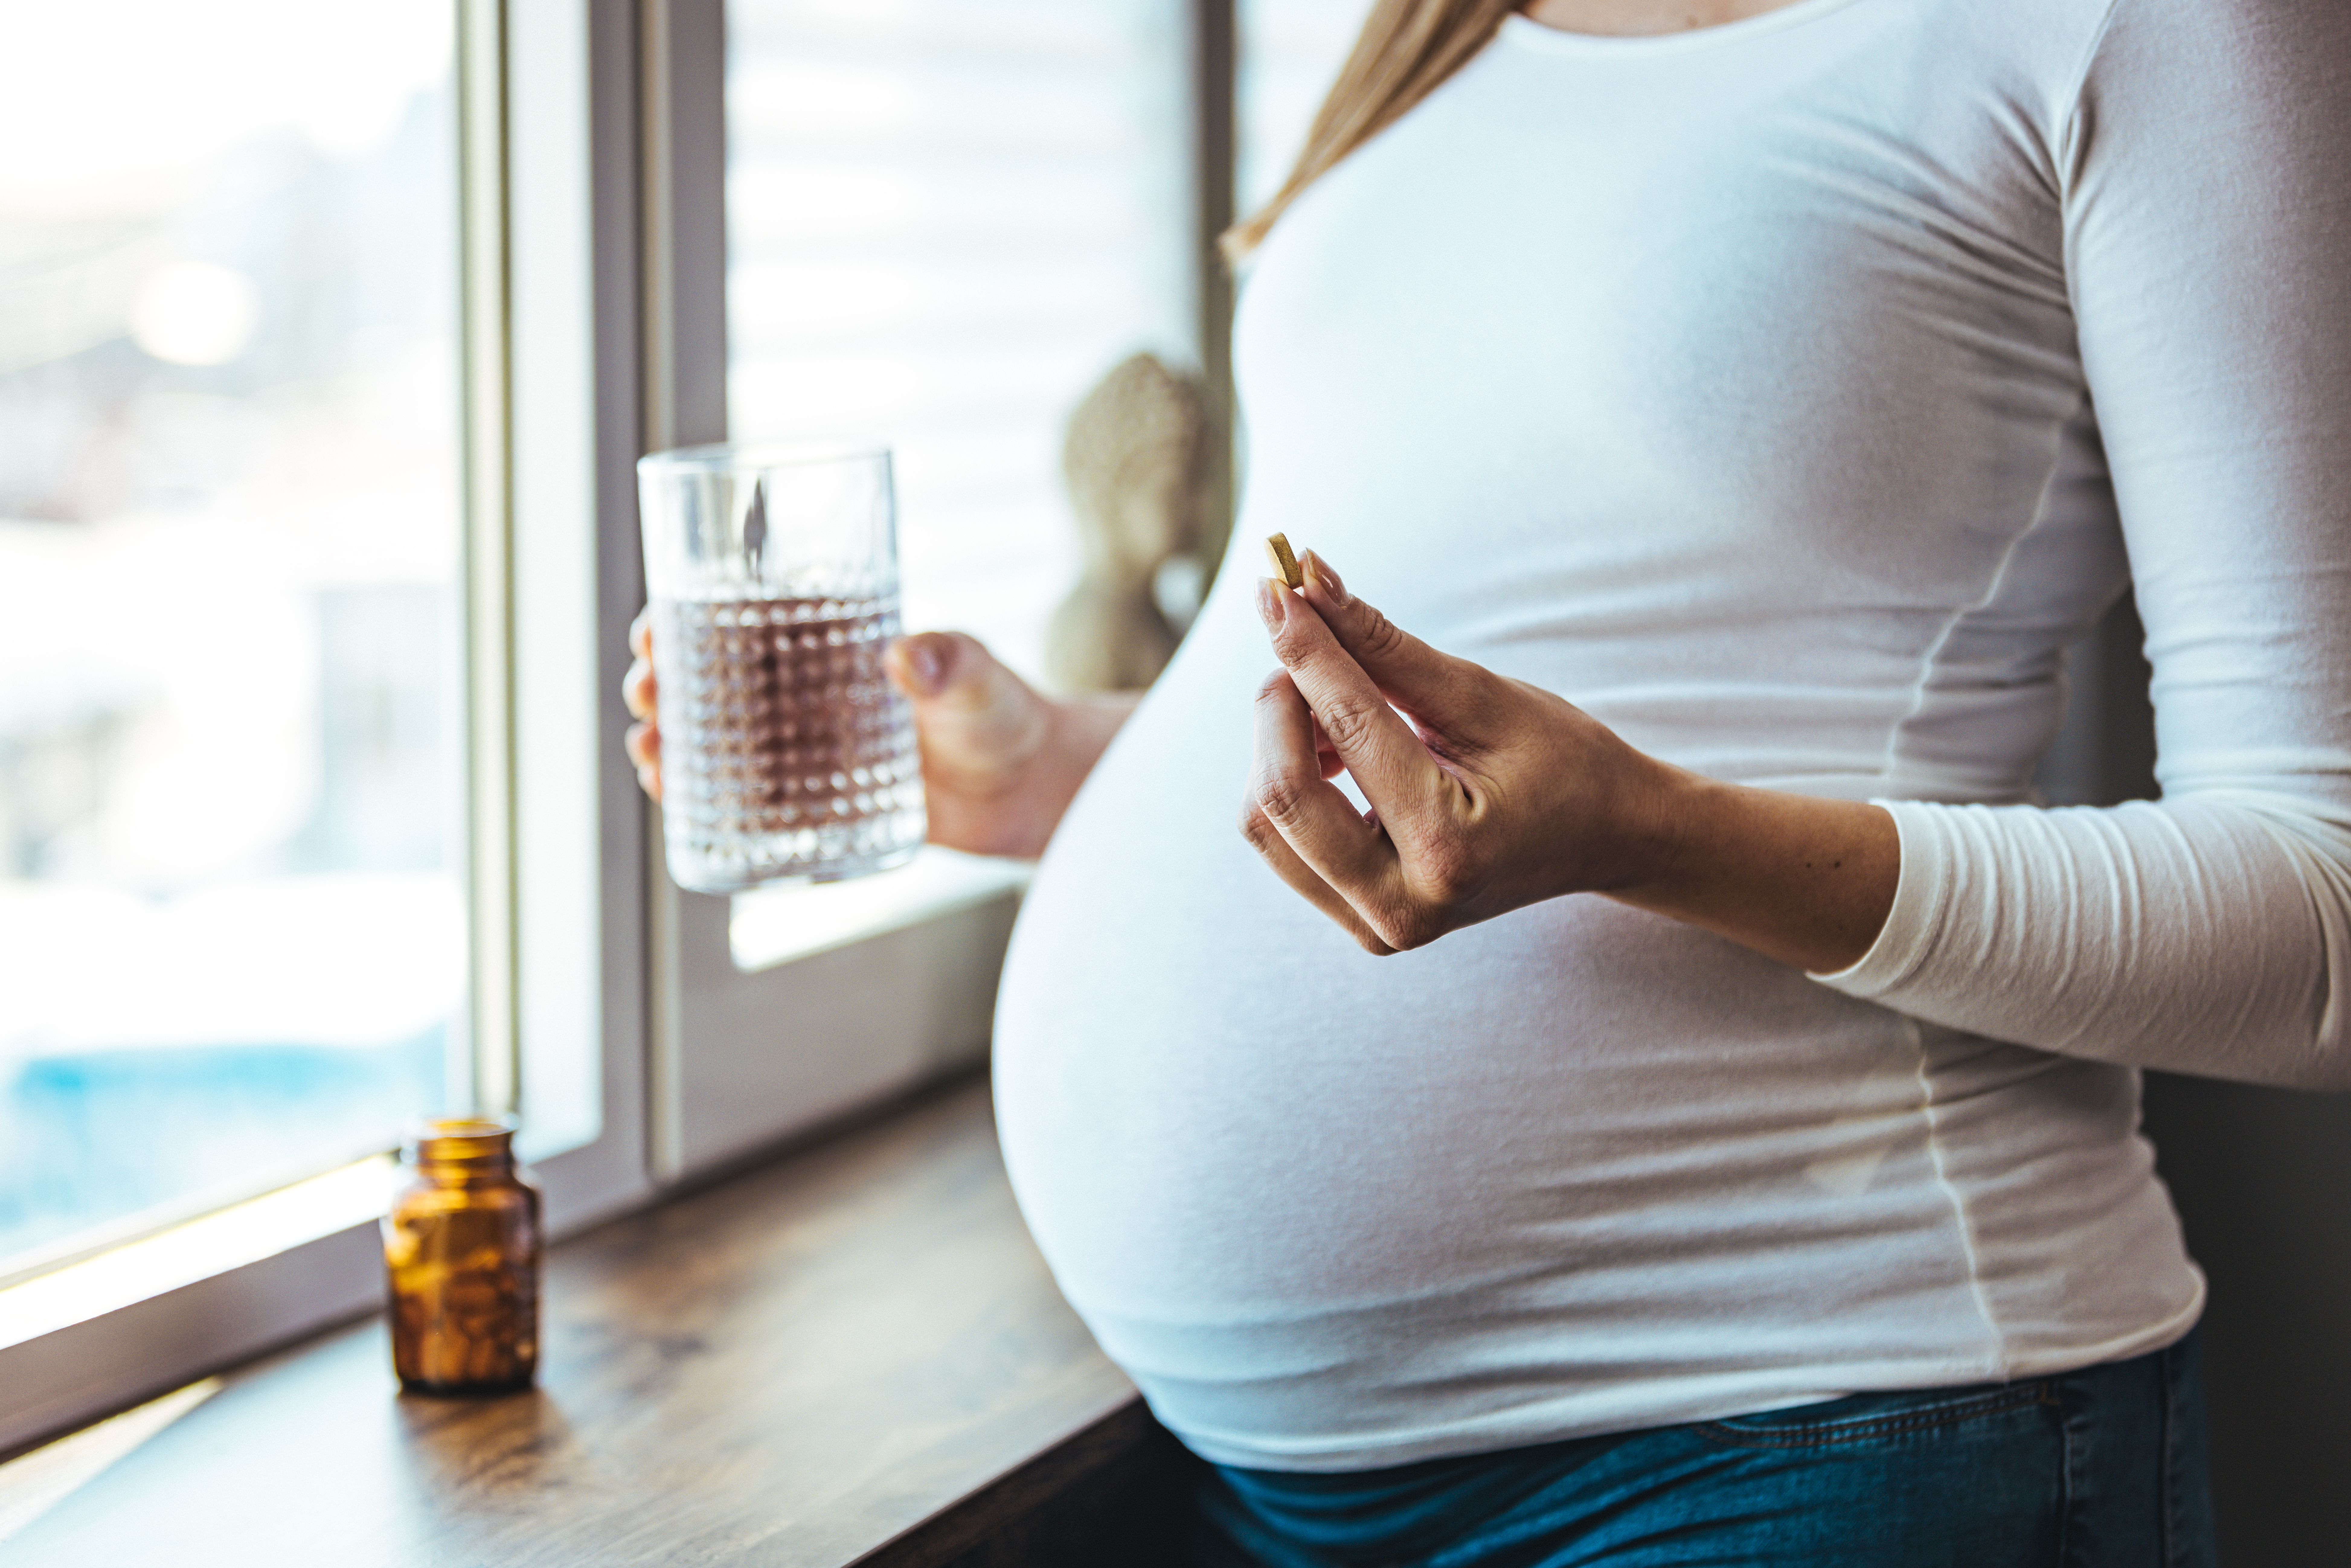 De multiples études ont alerté sur les effets néfastes de l’obésité maternelle avant et durant la grossesse sur la santé des enfants à naître (Visuel Adobe Stock 484189038)